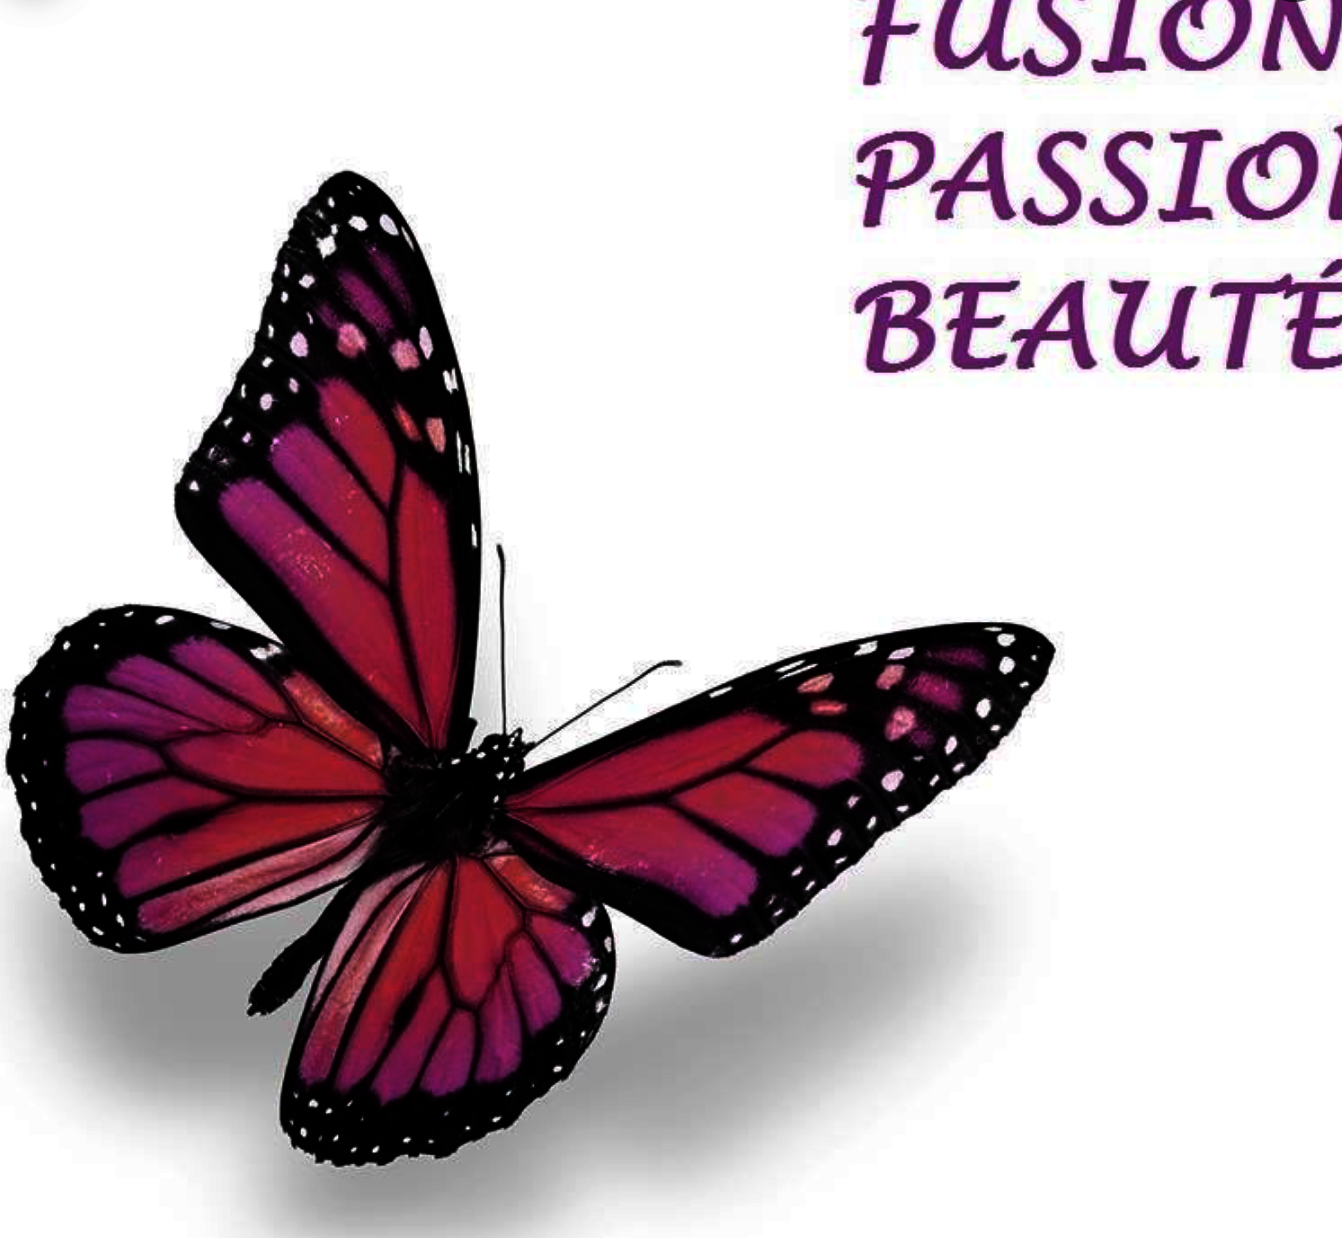 Fusion Passion Beauté